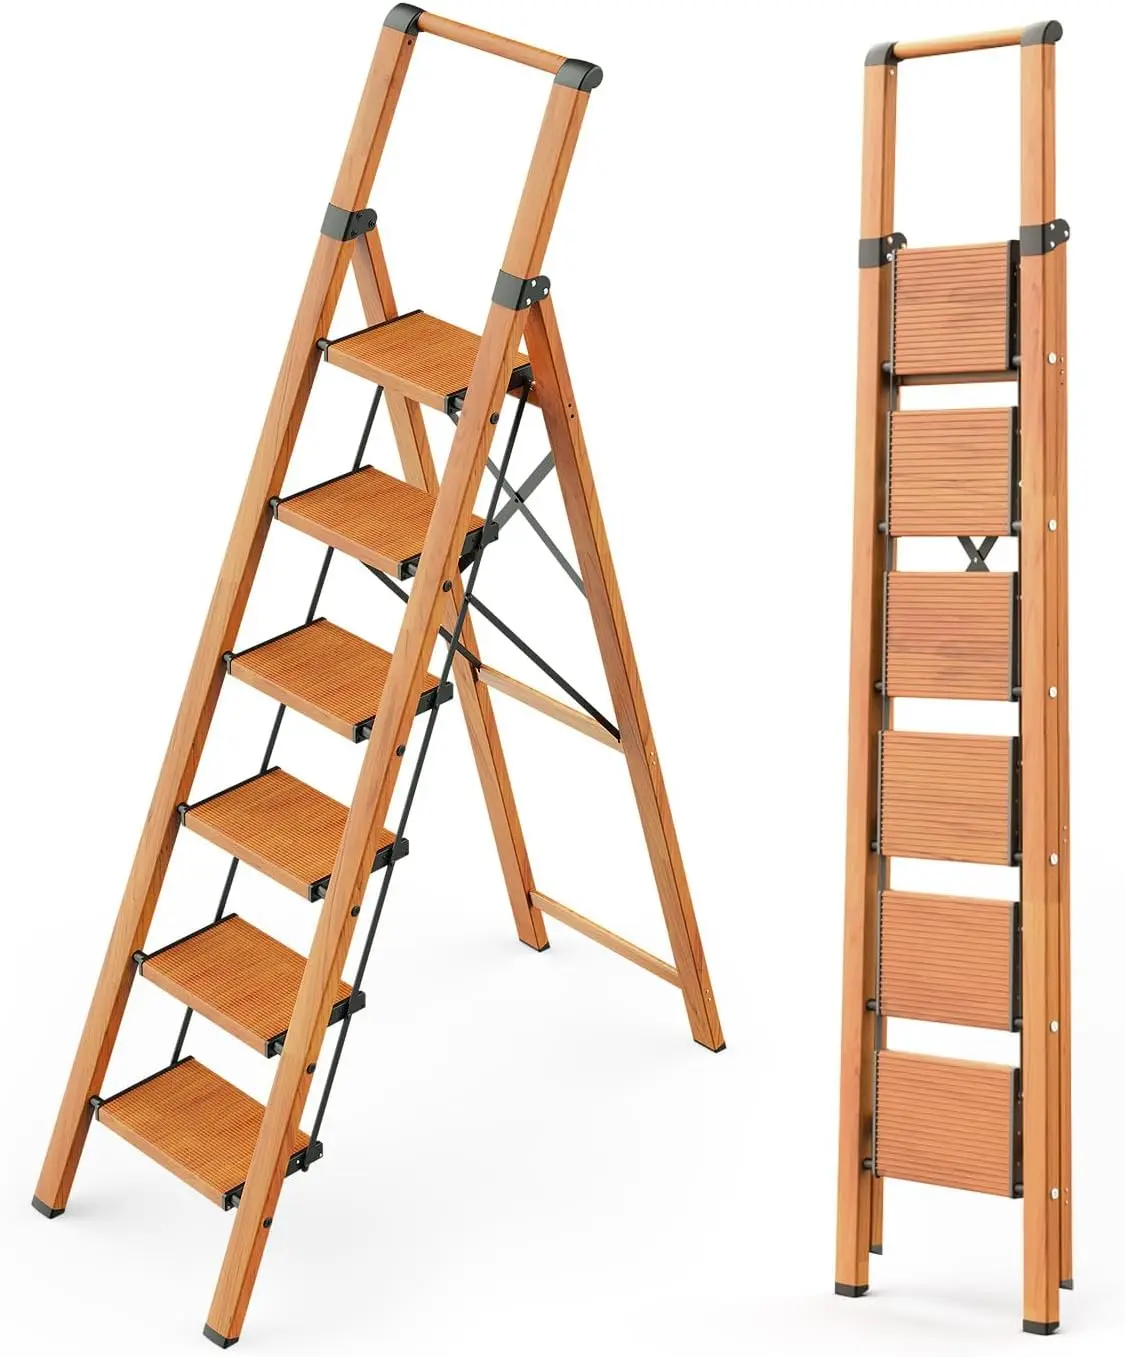 

6-ступенчатая лестница, складная лестница с поручнями для высоких потолков, внутренние высокие лестницы с широкими педалями, легкая алюминиевая лестница